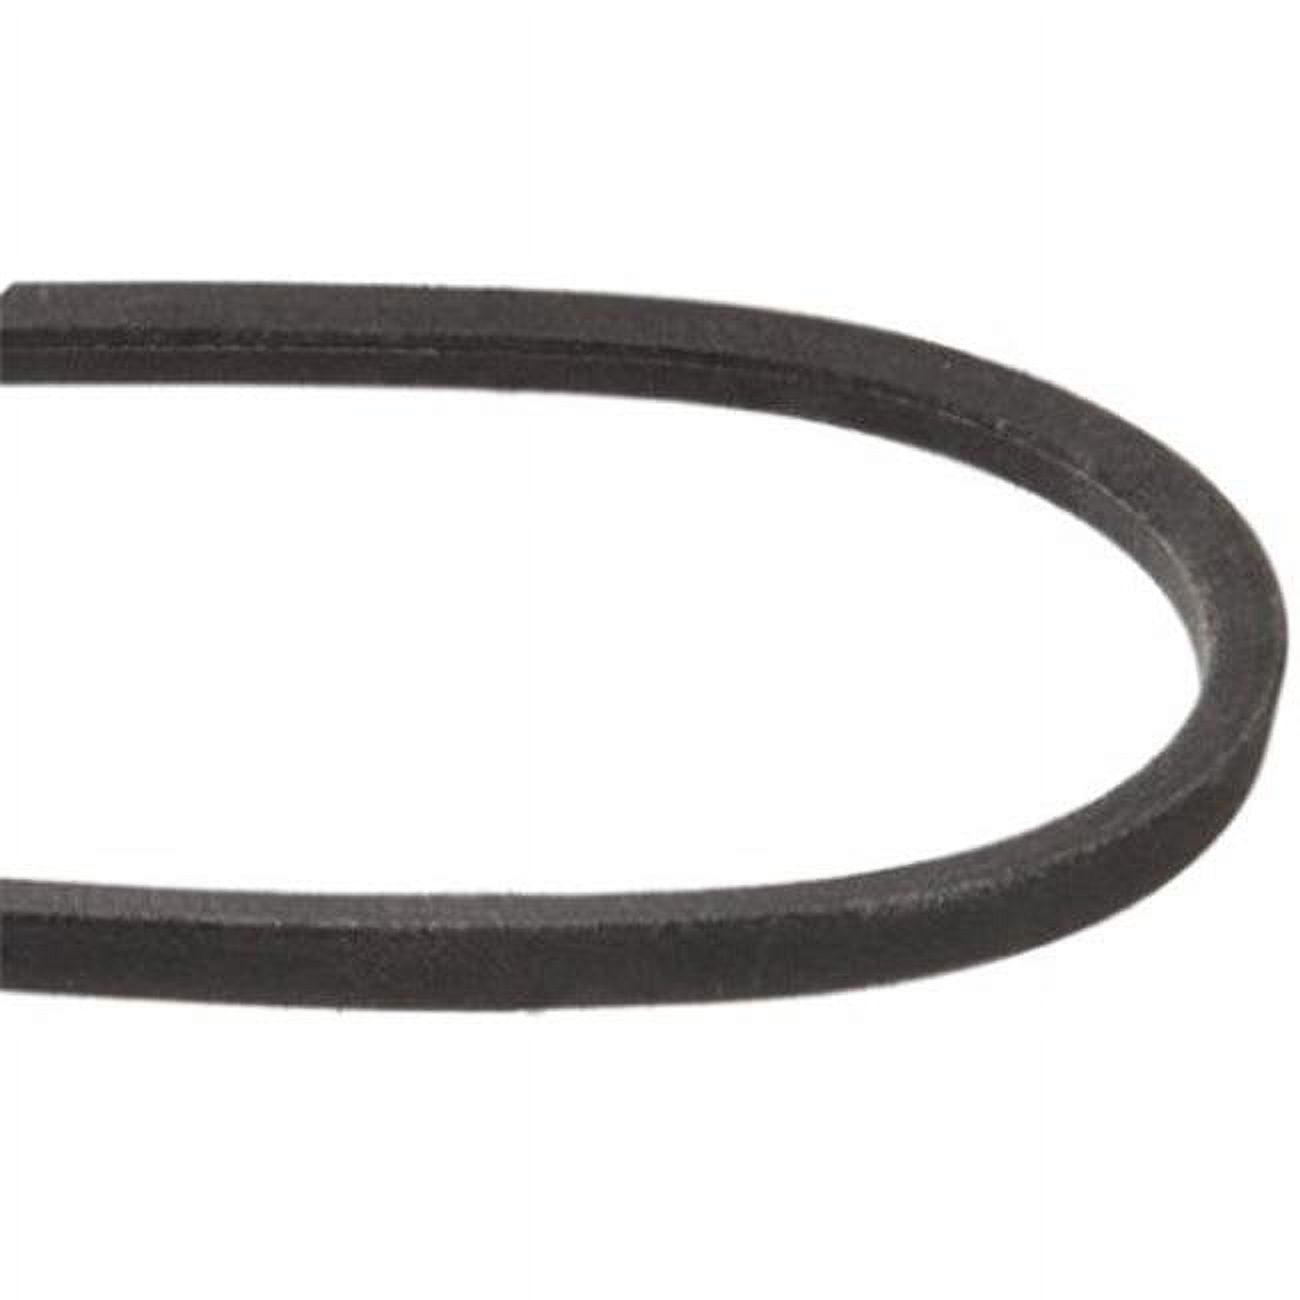 Mxv5-480 0.62 X 48 In. Heavy-duty Lawn & Garden Equipment Belt, Black